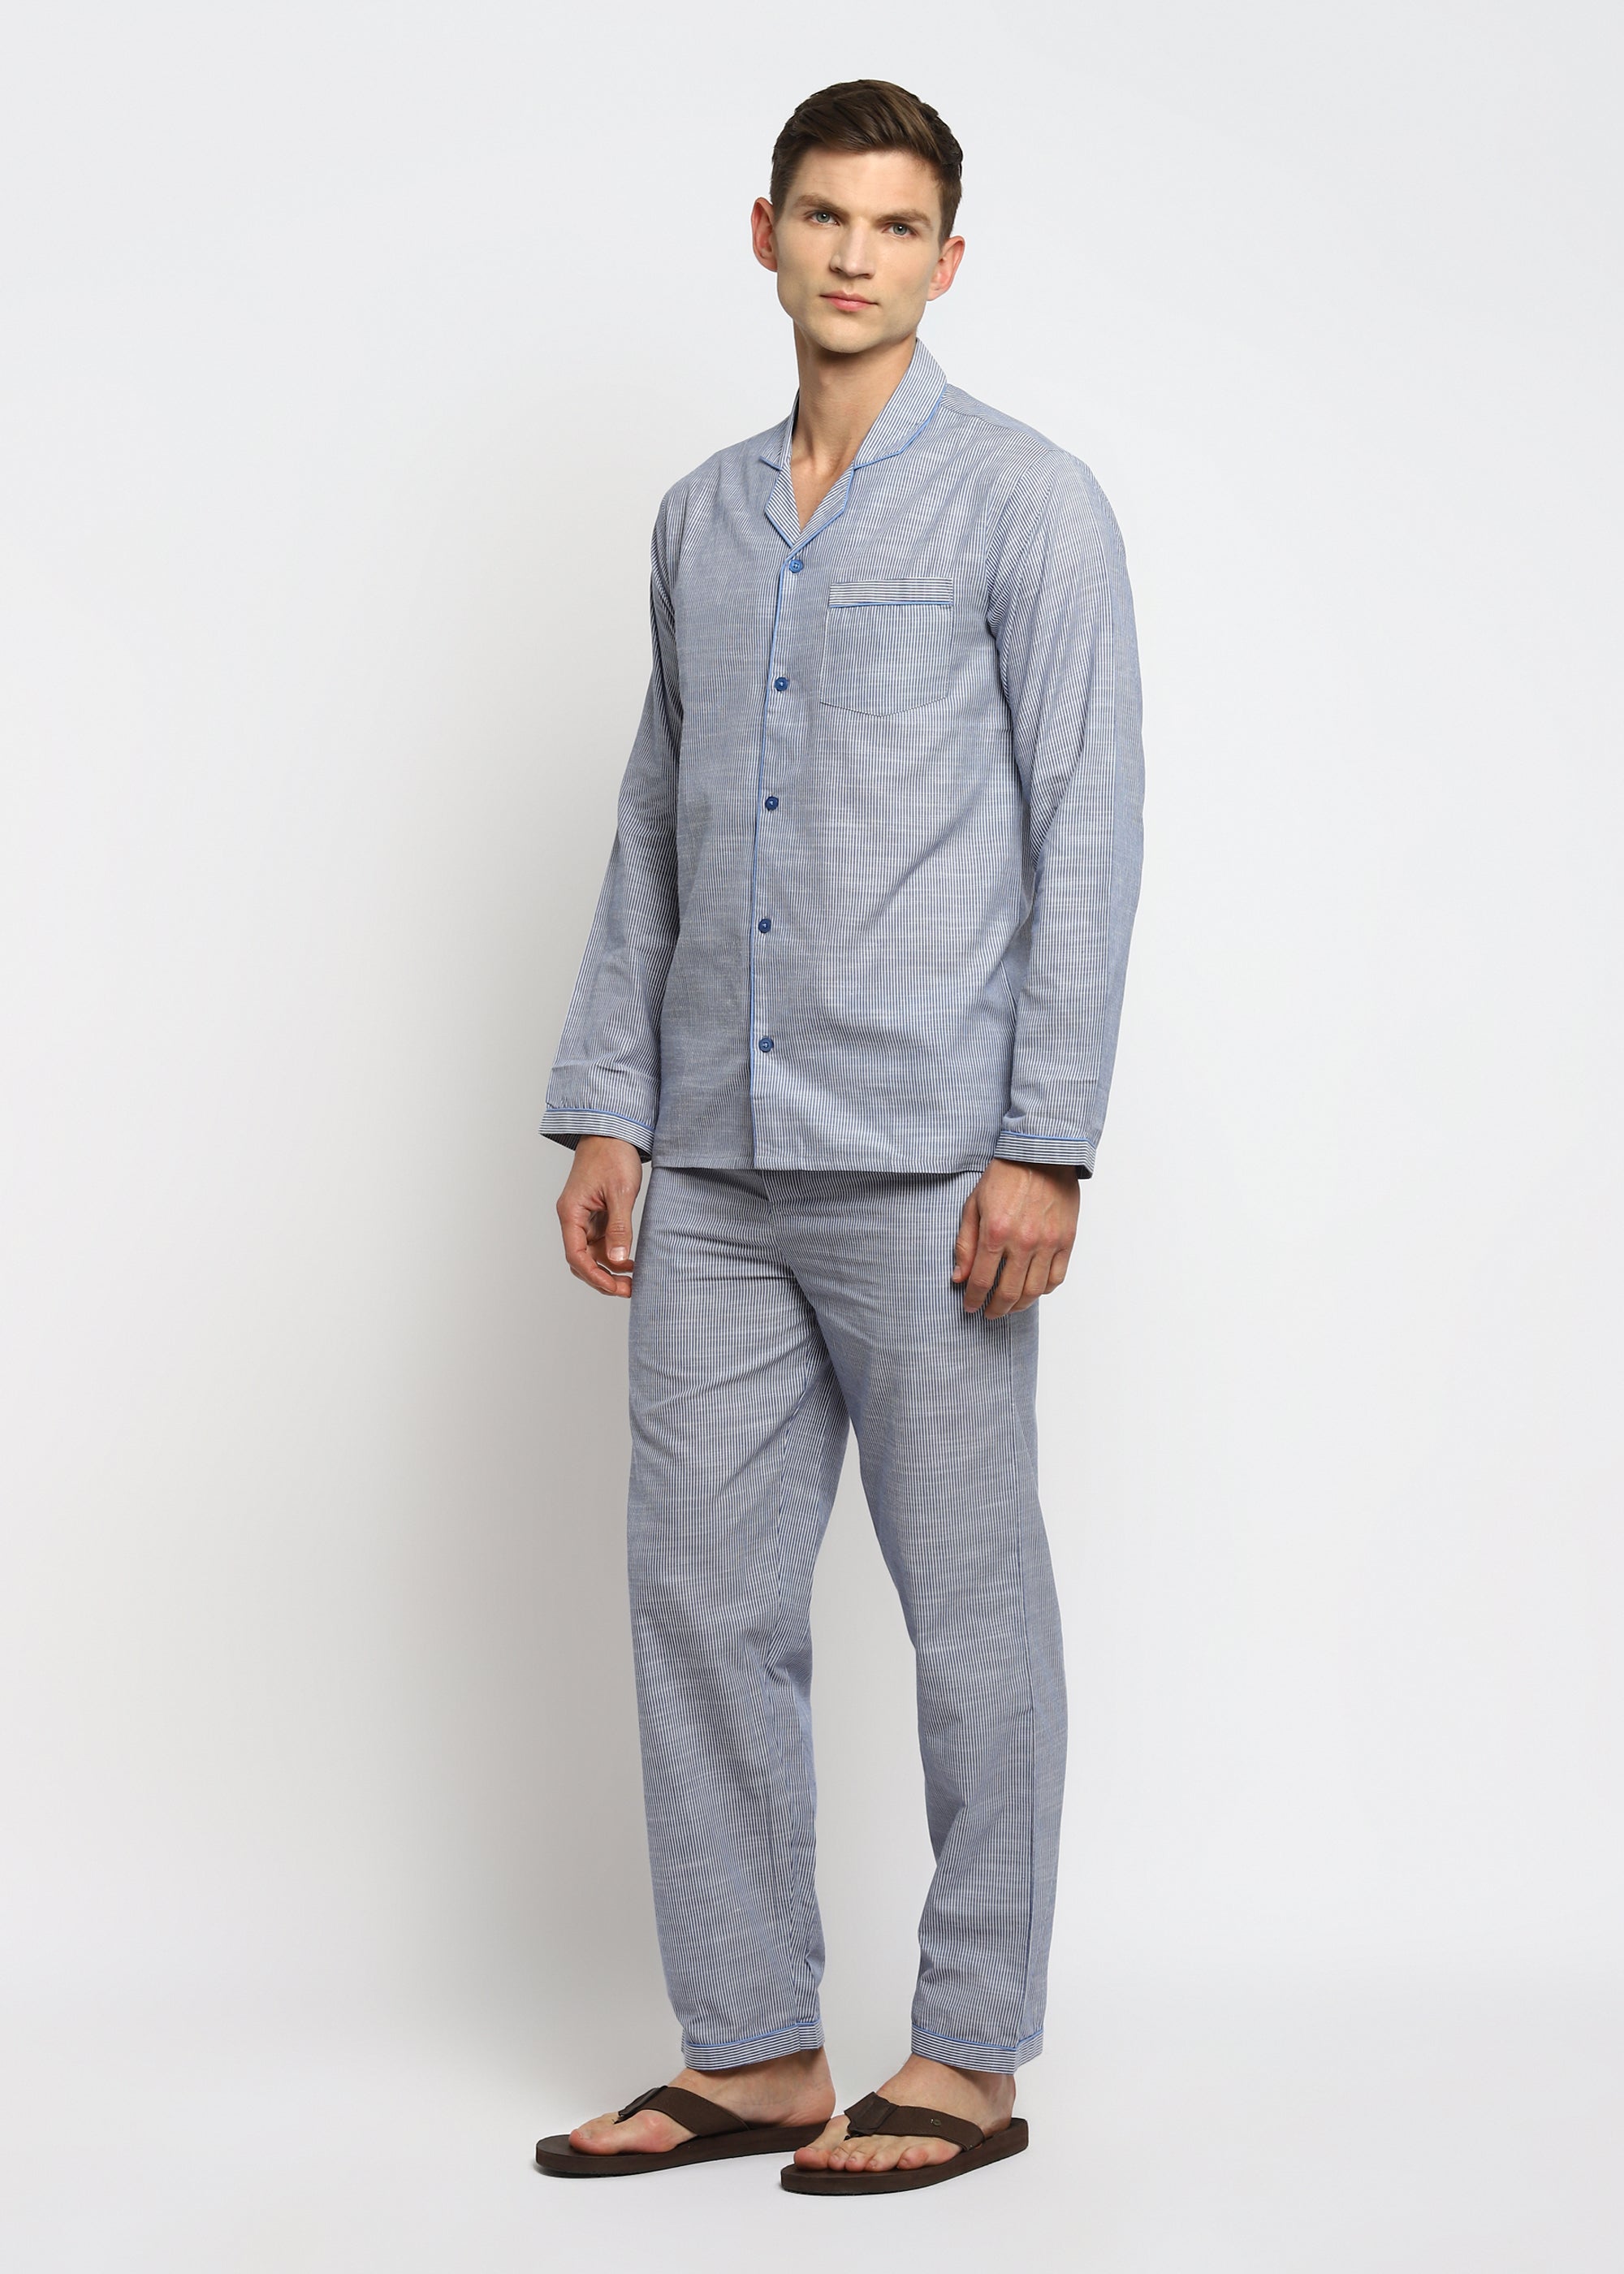 Blue Stripes Cotton Long Sleeve Men's Night Suit - Shopbloom